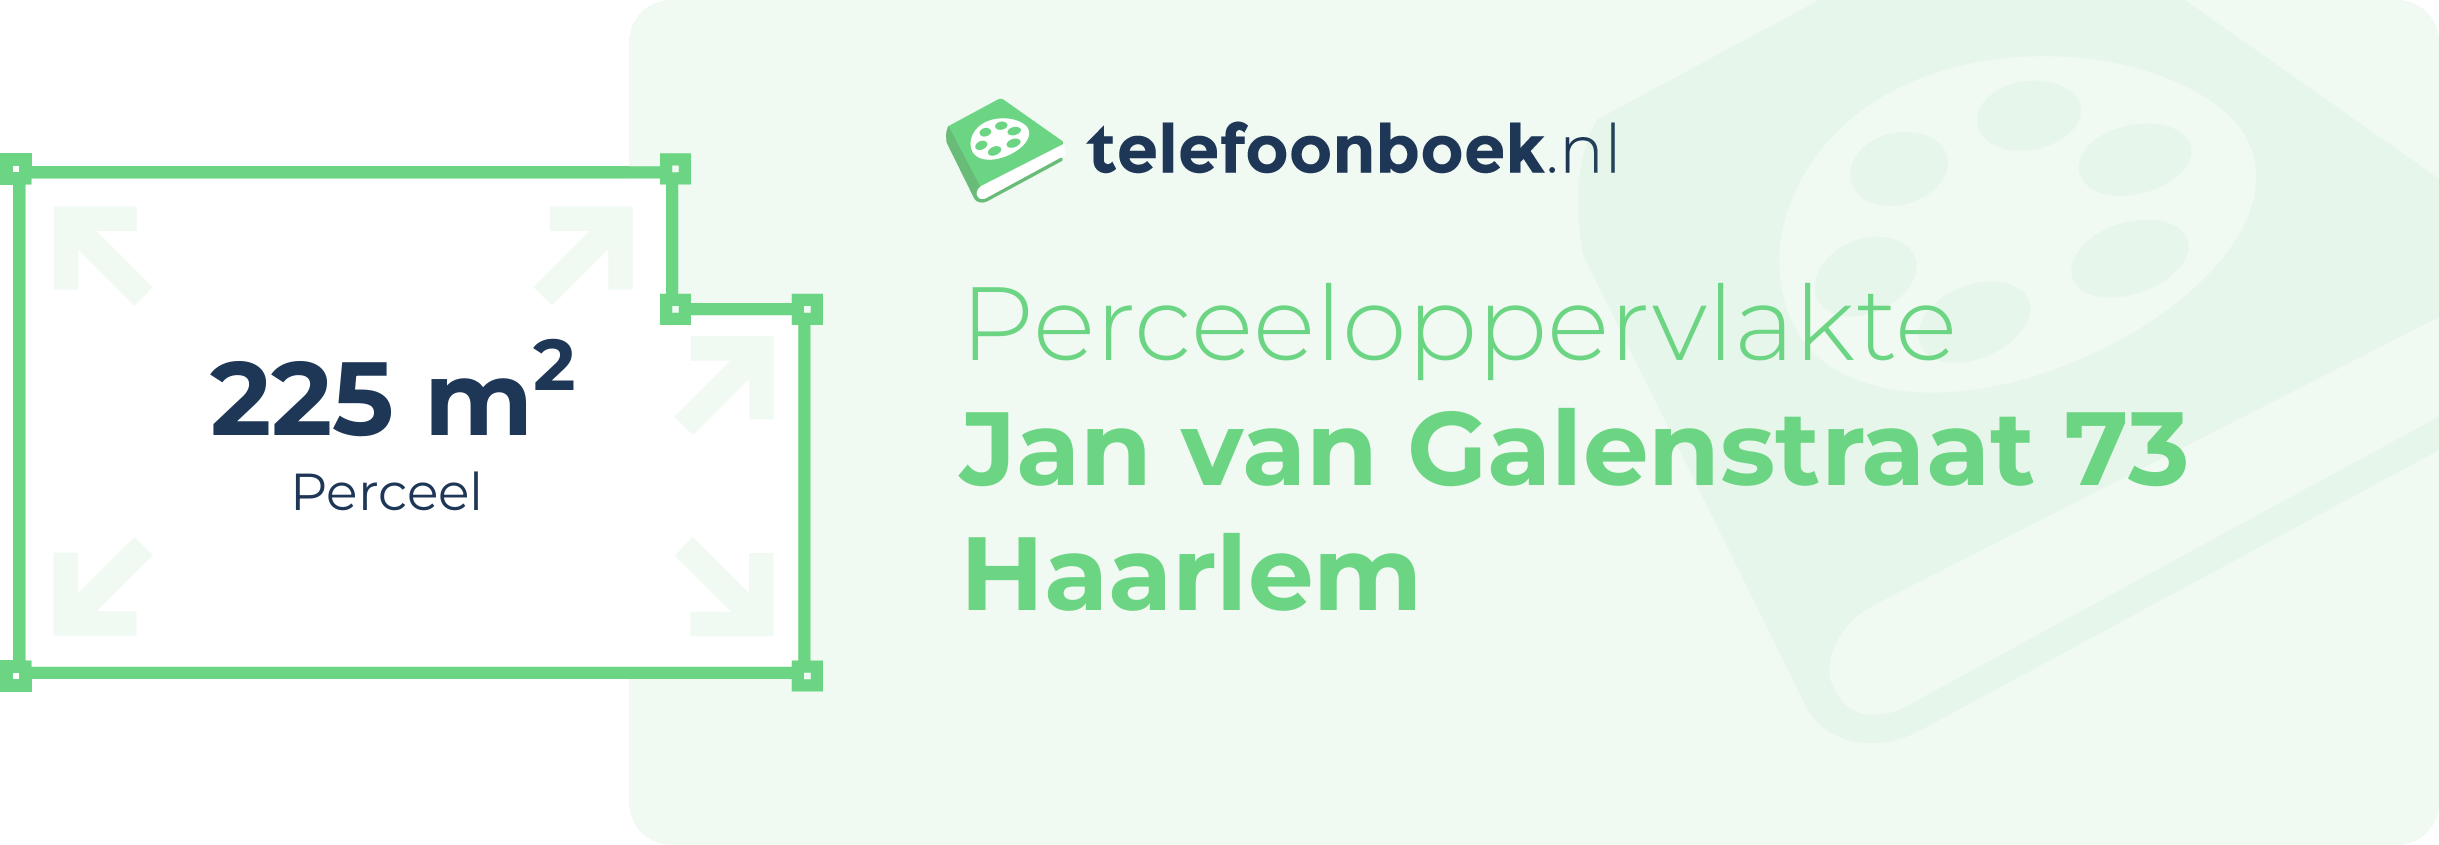 Perceeloppervlakte Jan Van Galenstraat 73 Haarlem